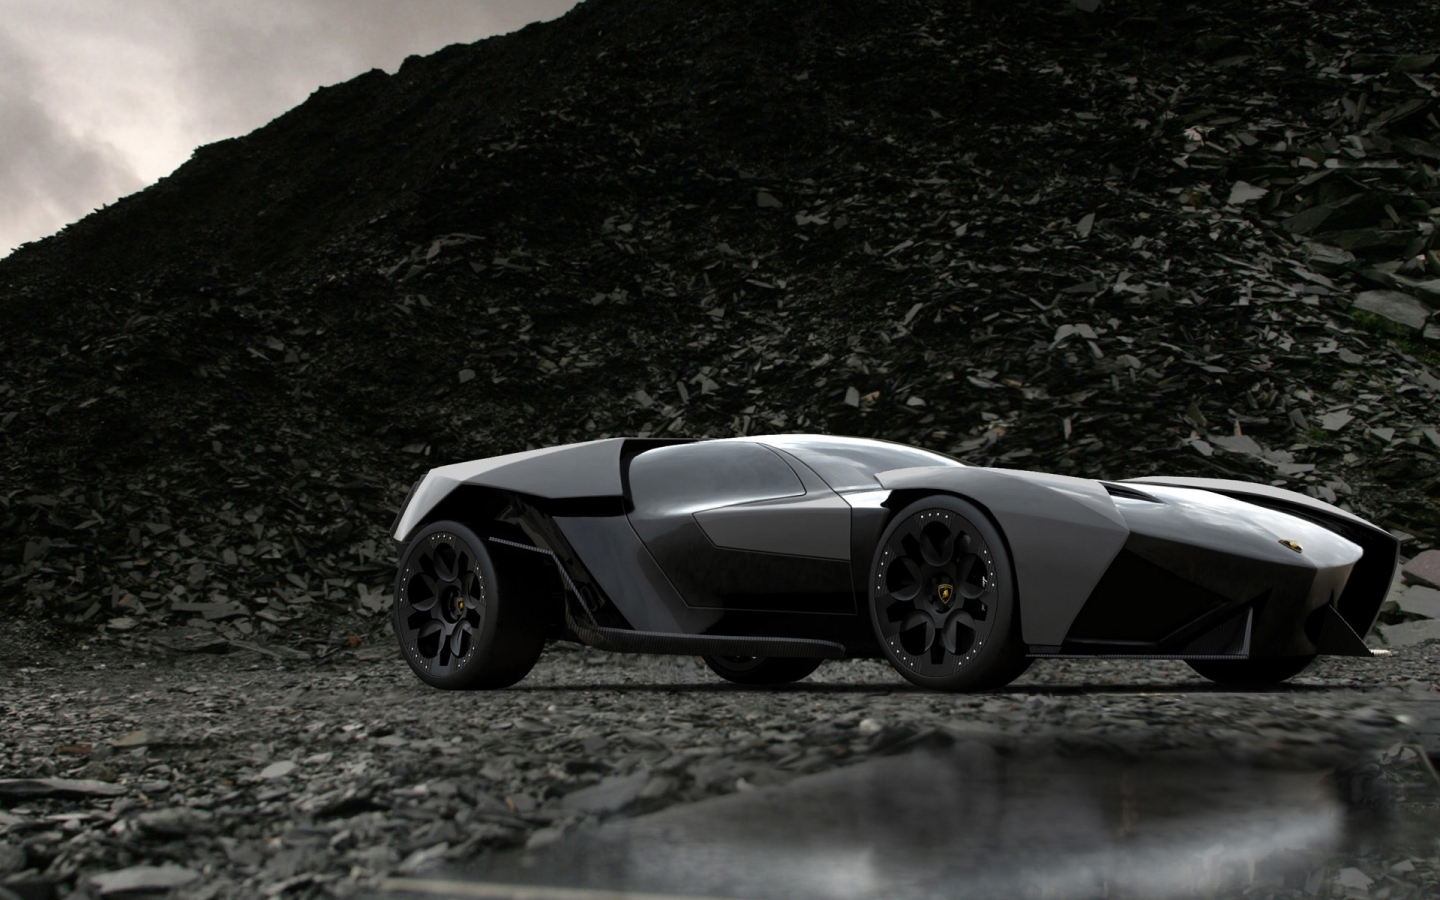 Lamborghini Ankonian for 1440 x 900 widescreen resolution